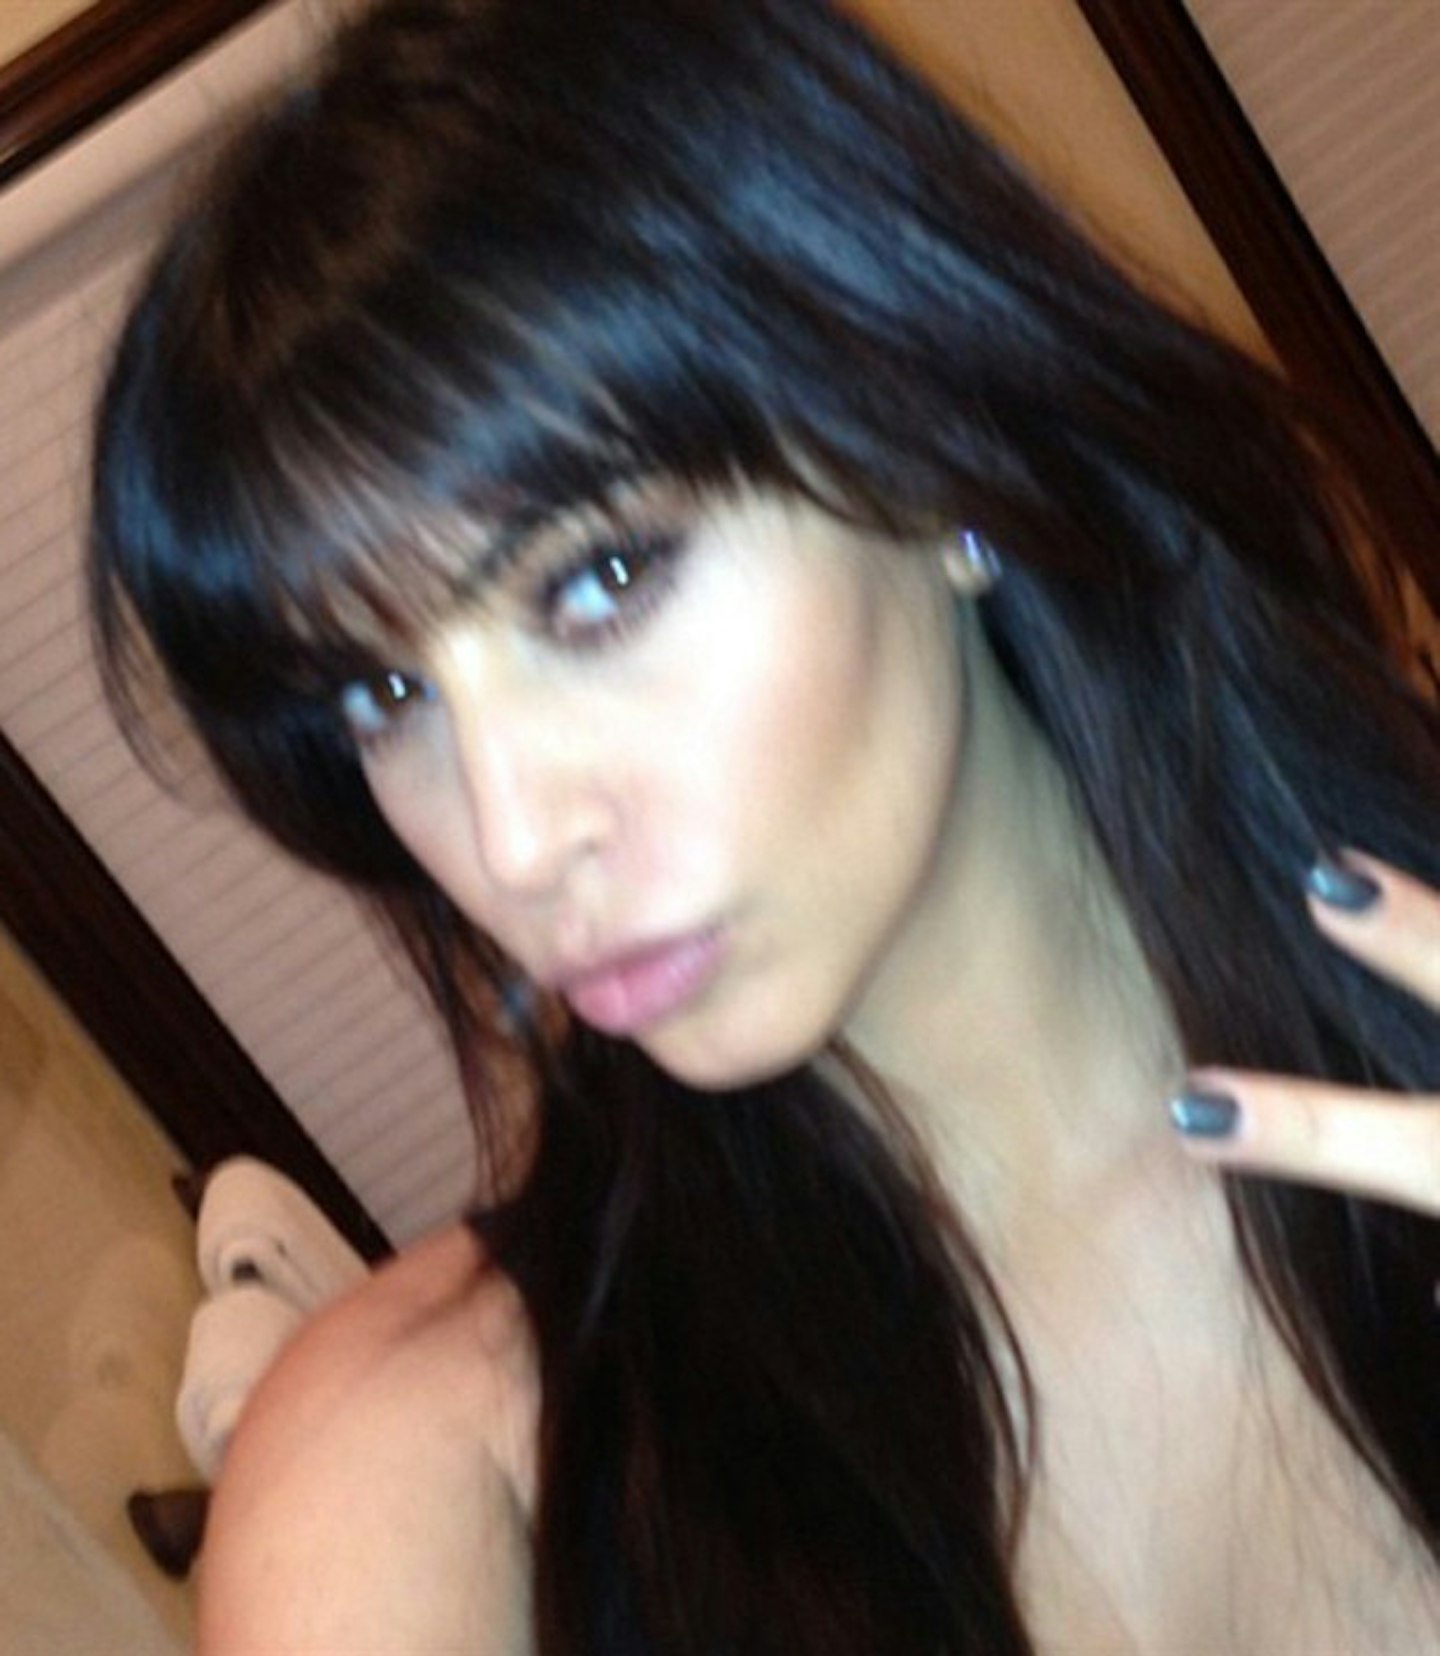 kim-kardashian-bangs-fringe-selfie